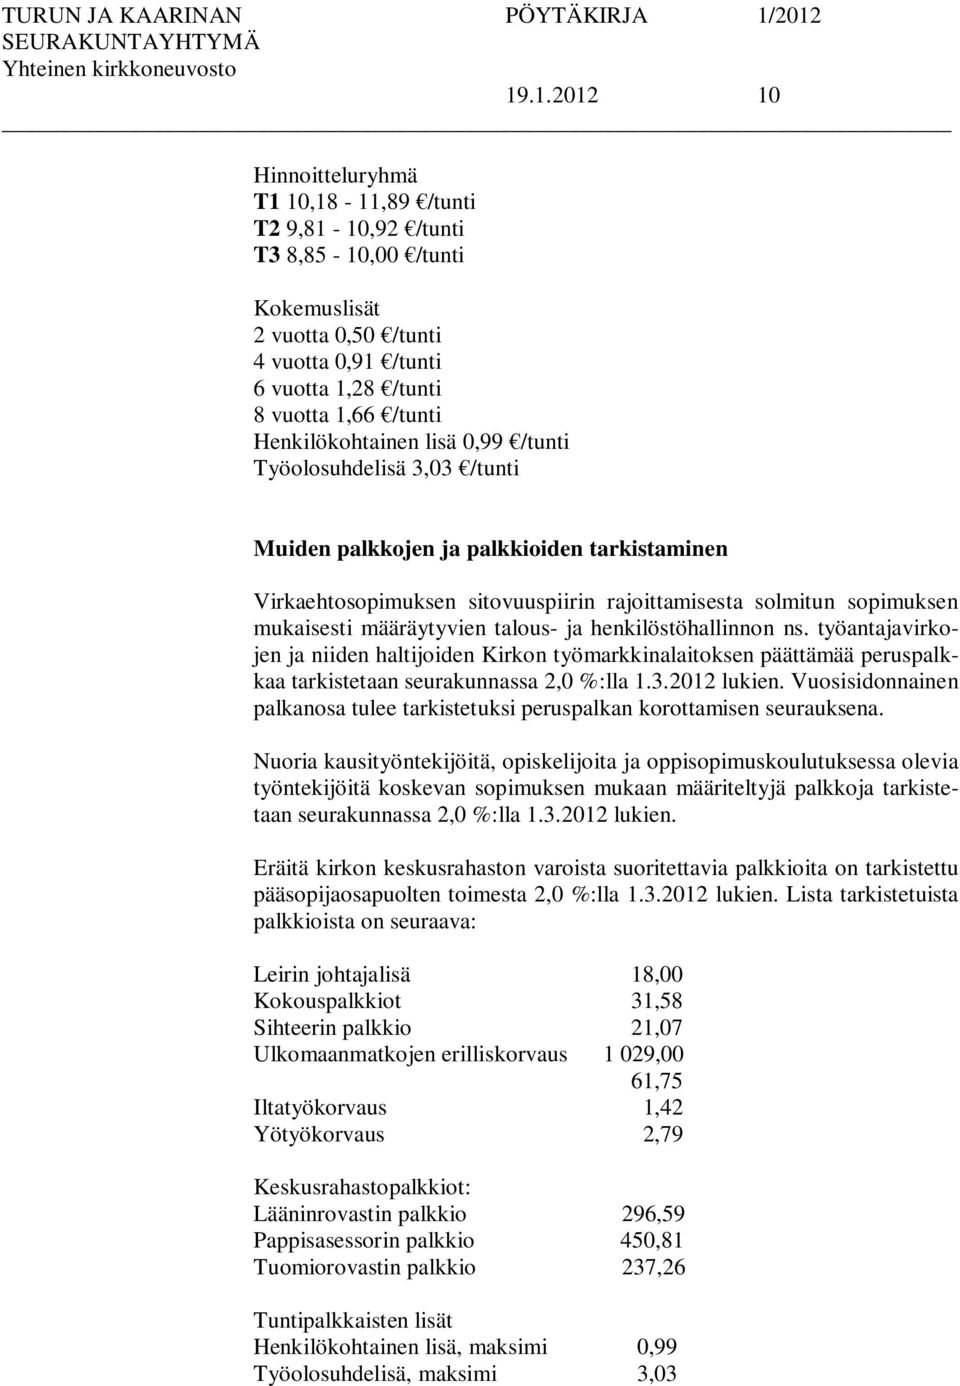 määräytyvien talous- ja henkilöstöhallinnon ns. työantajavirkojen ja niiden haltijoiden Kirkon työmarkkinalaitoksen päättämää peruspalkkaa tarkistetaan seurakunnassa 2,0 %:lla 1.3.2012 lukien.